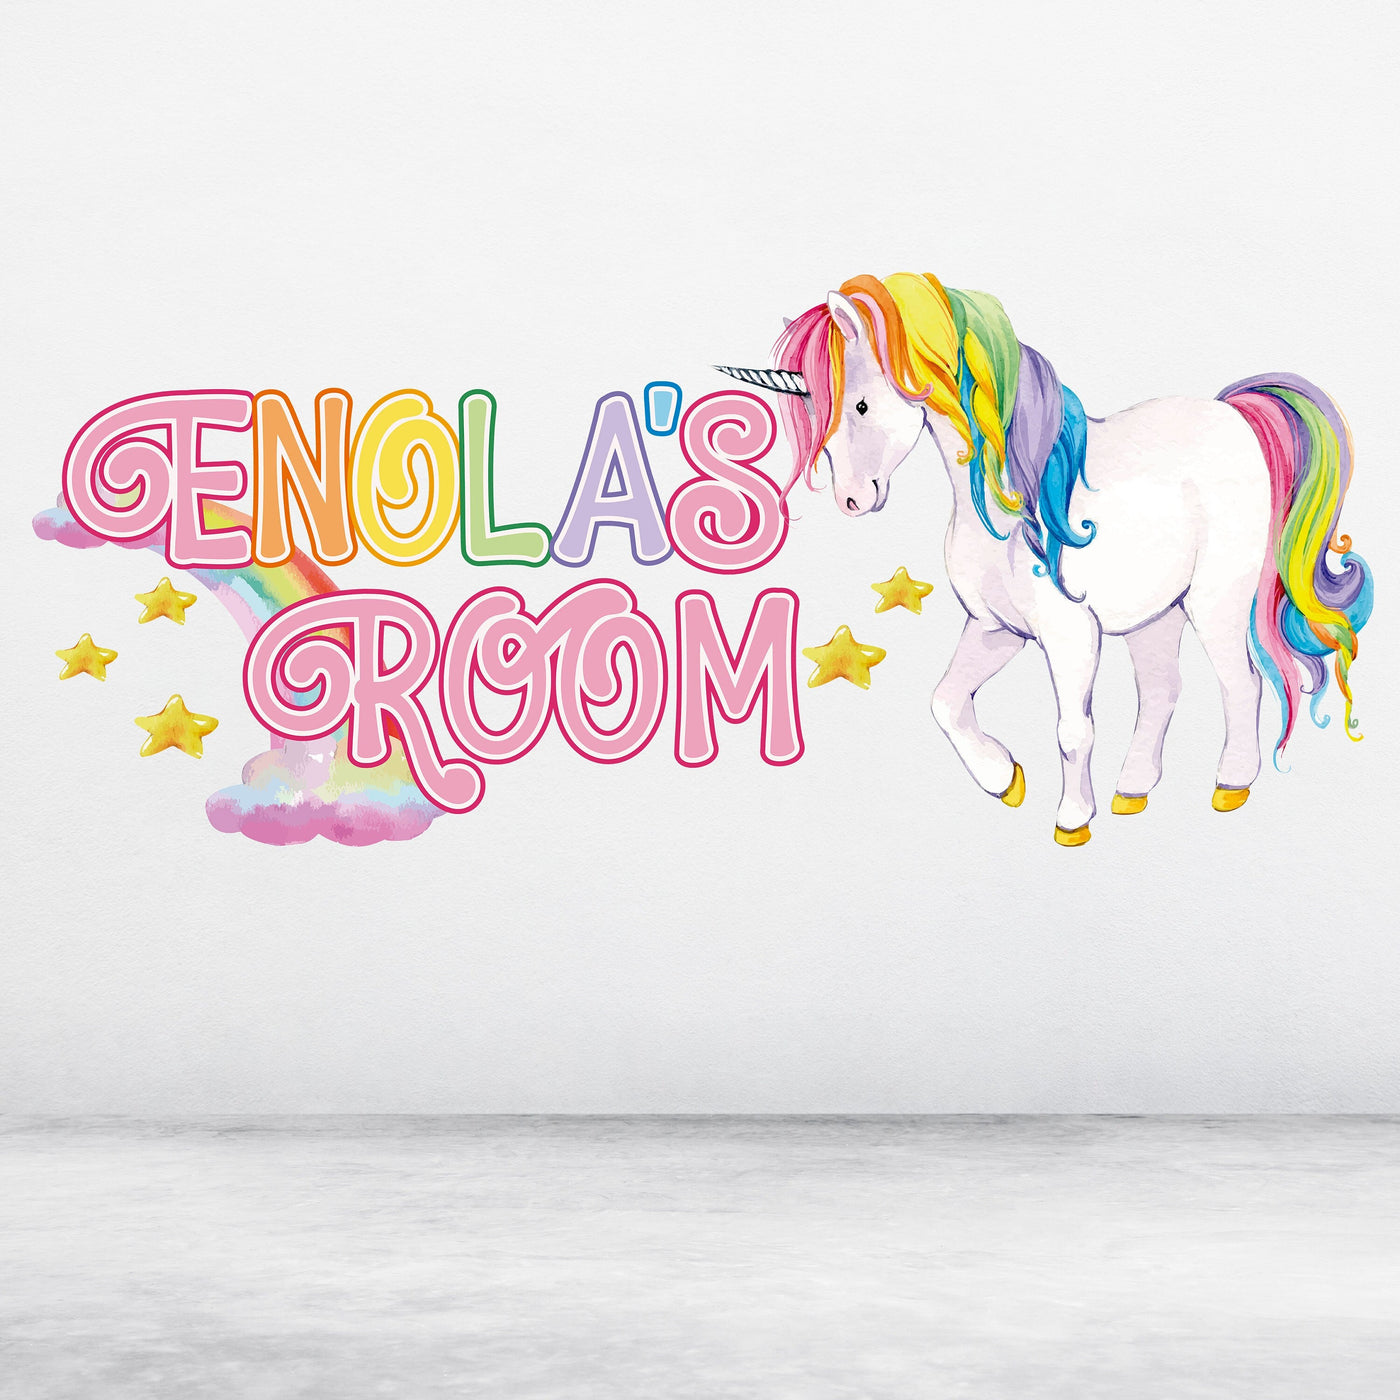 Decalque de parede com nome de unicórnio arco-íris - Decoração de quarto de unicórnio personalizada para meninas - Decoração de quarto infantil - Decalque de parede personalizado - Adesivos de unicórnio